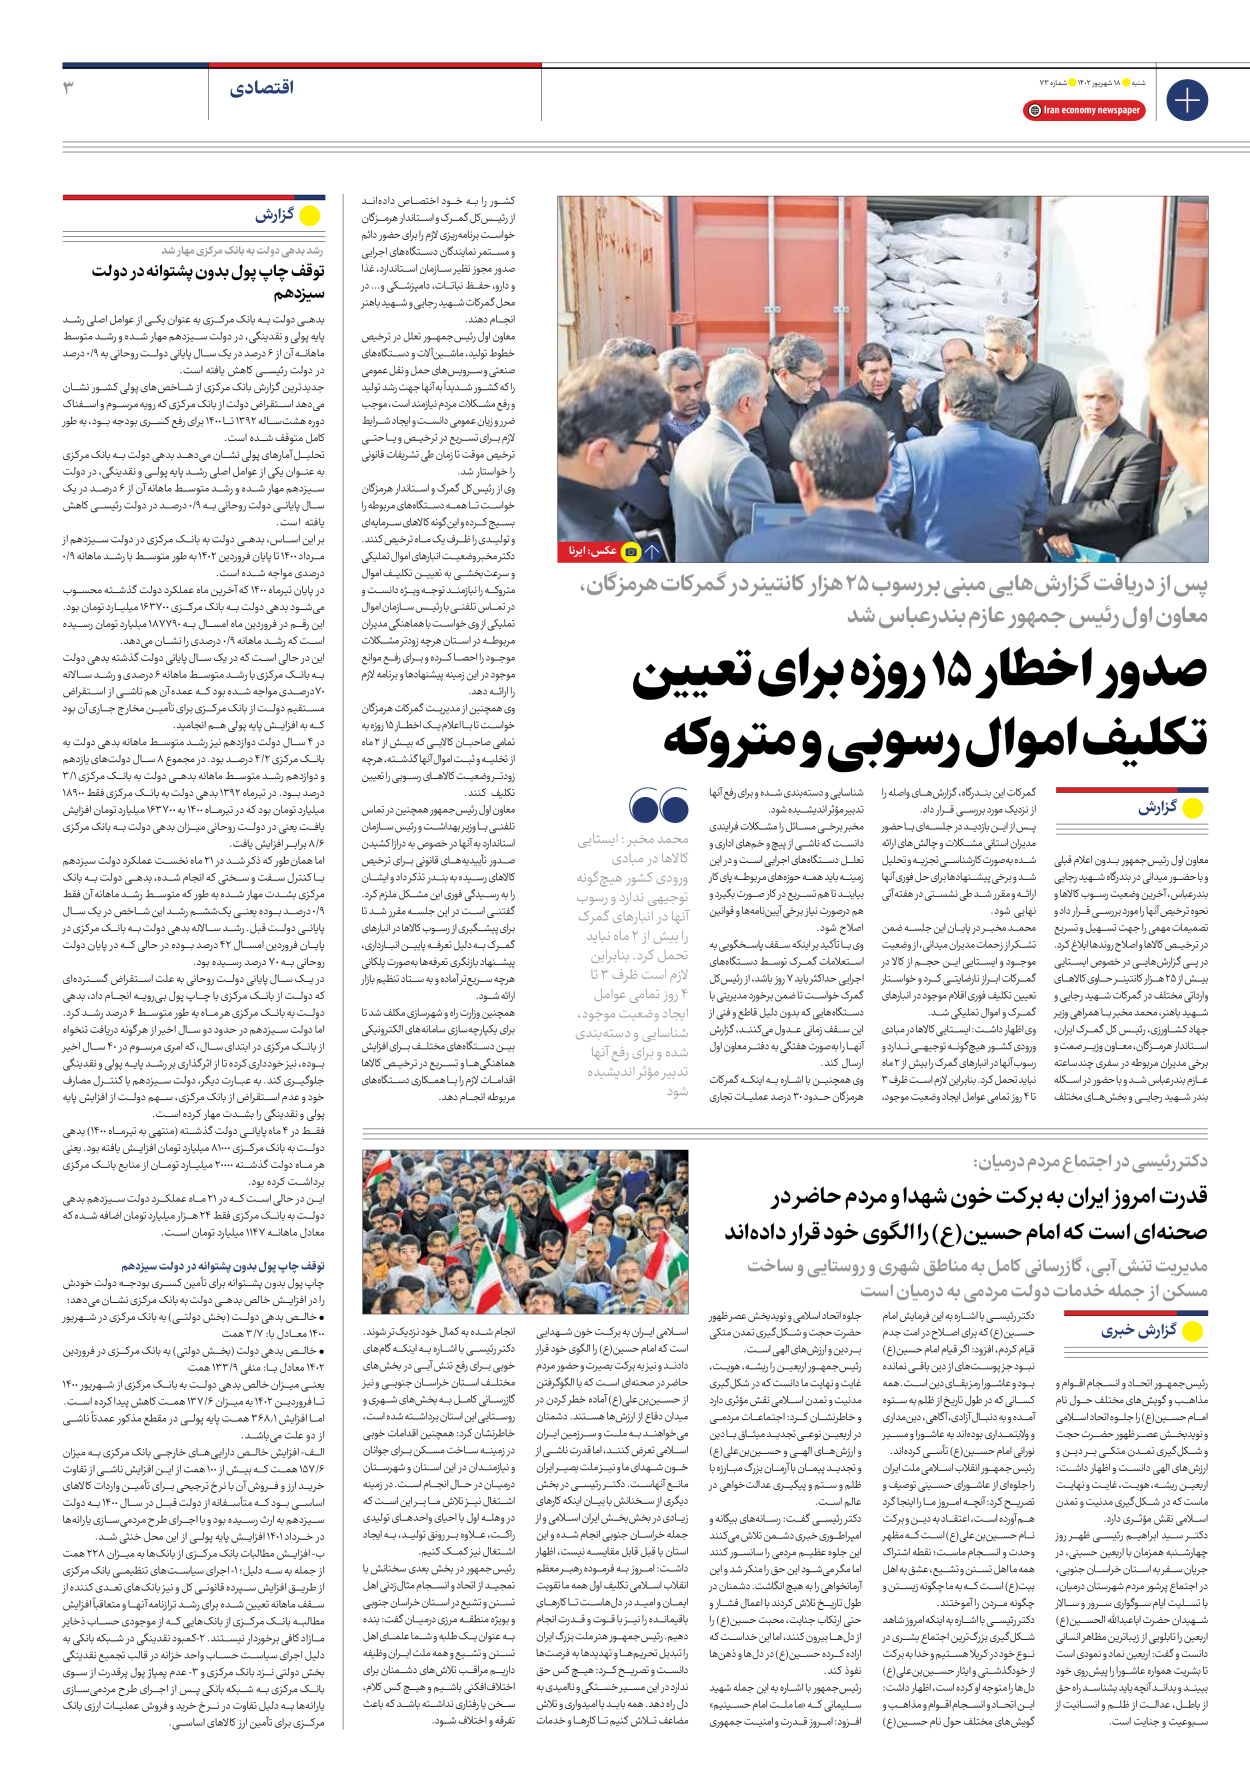 روزنامه ایران اقتصادی - شماره هفتاد و سه - ۱۸ شهریور ۱۴۰۲ - صفحه ۳